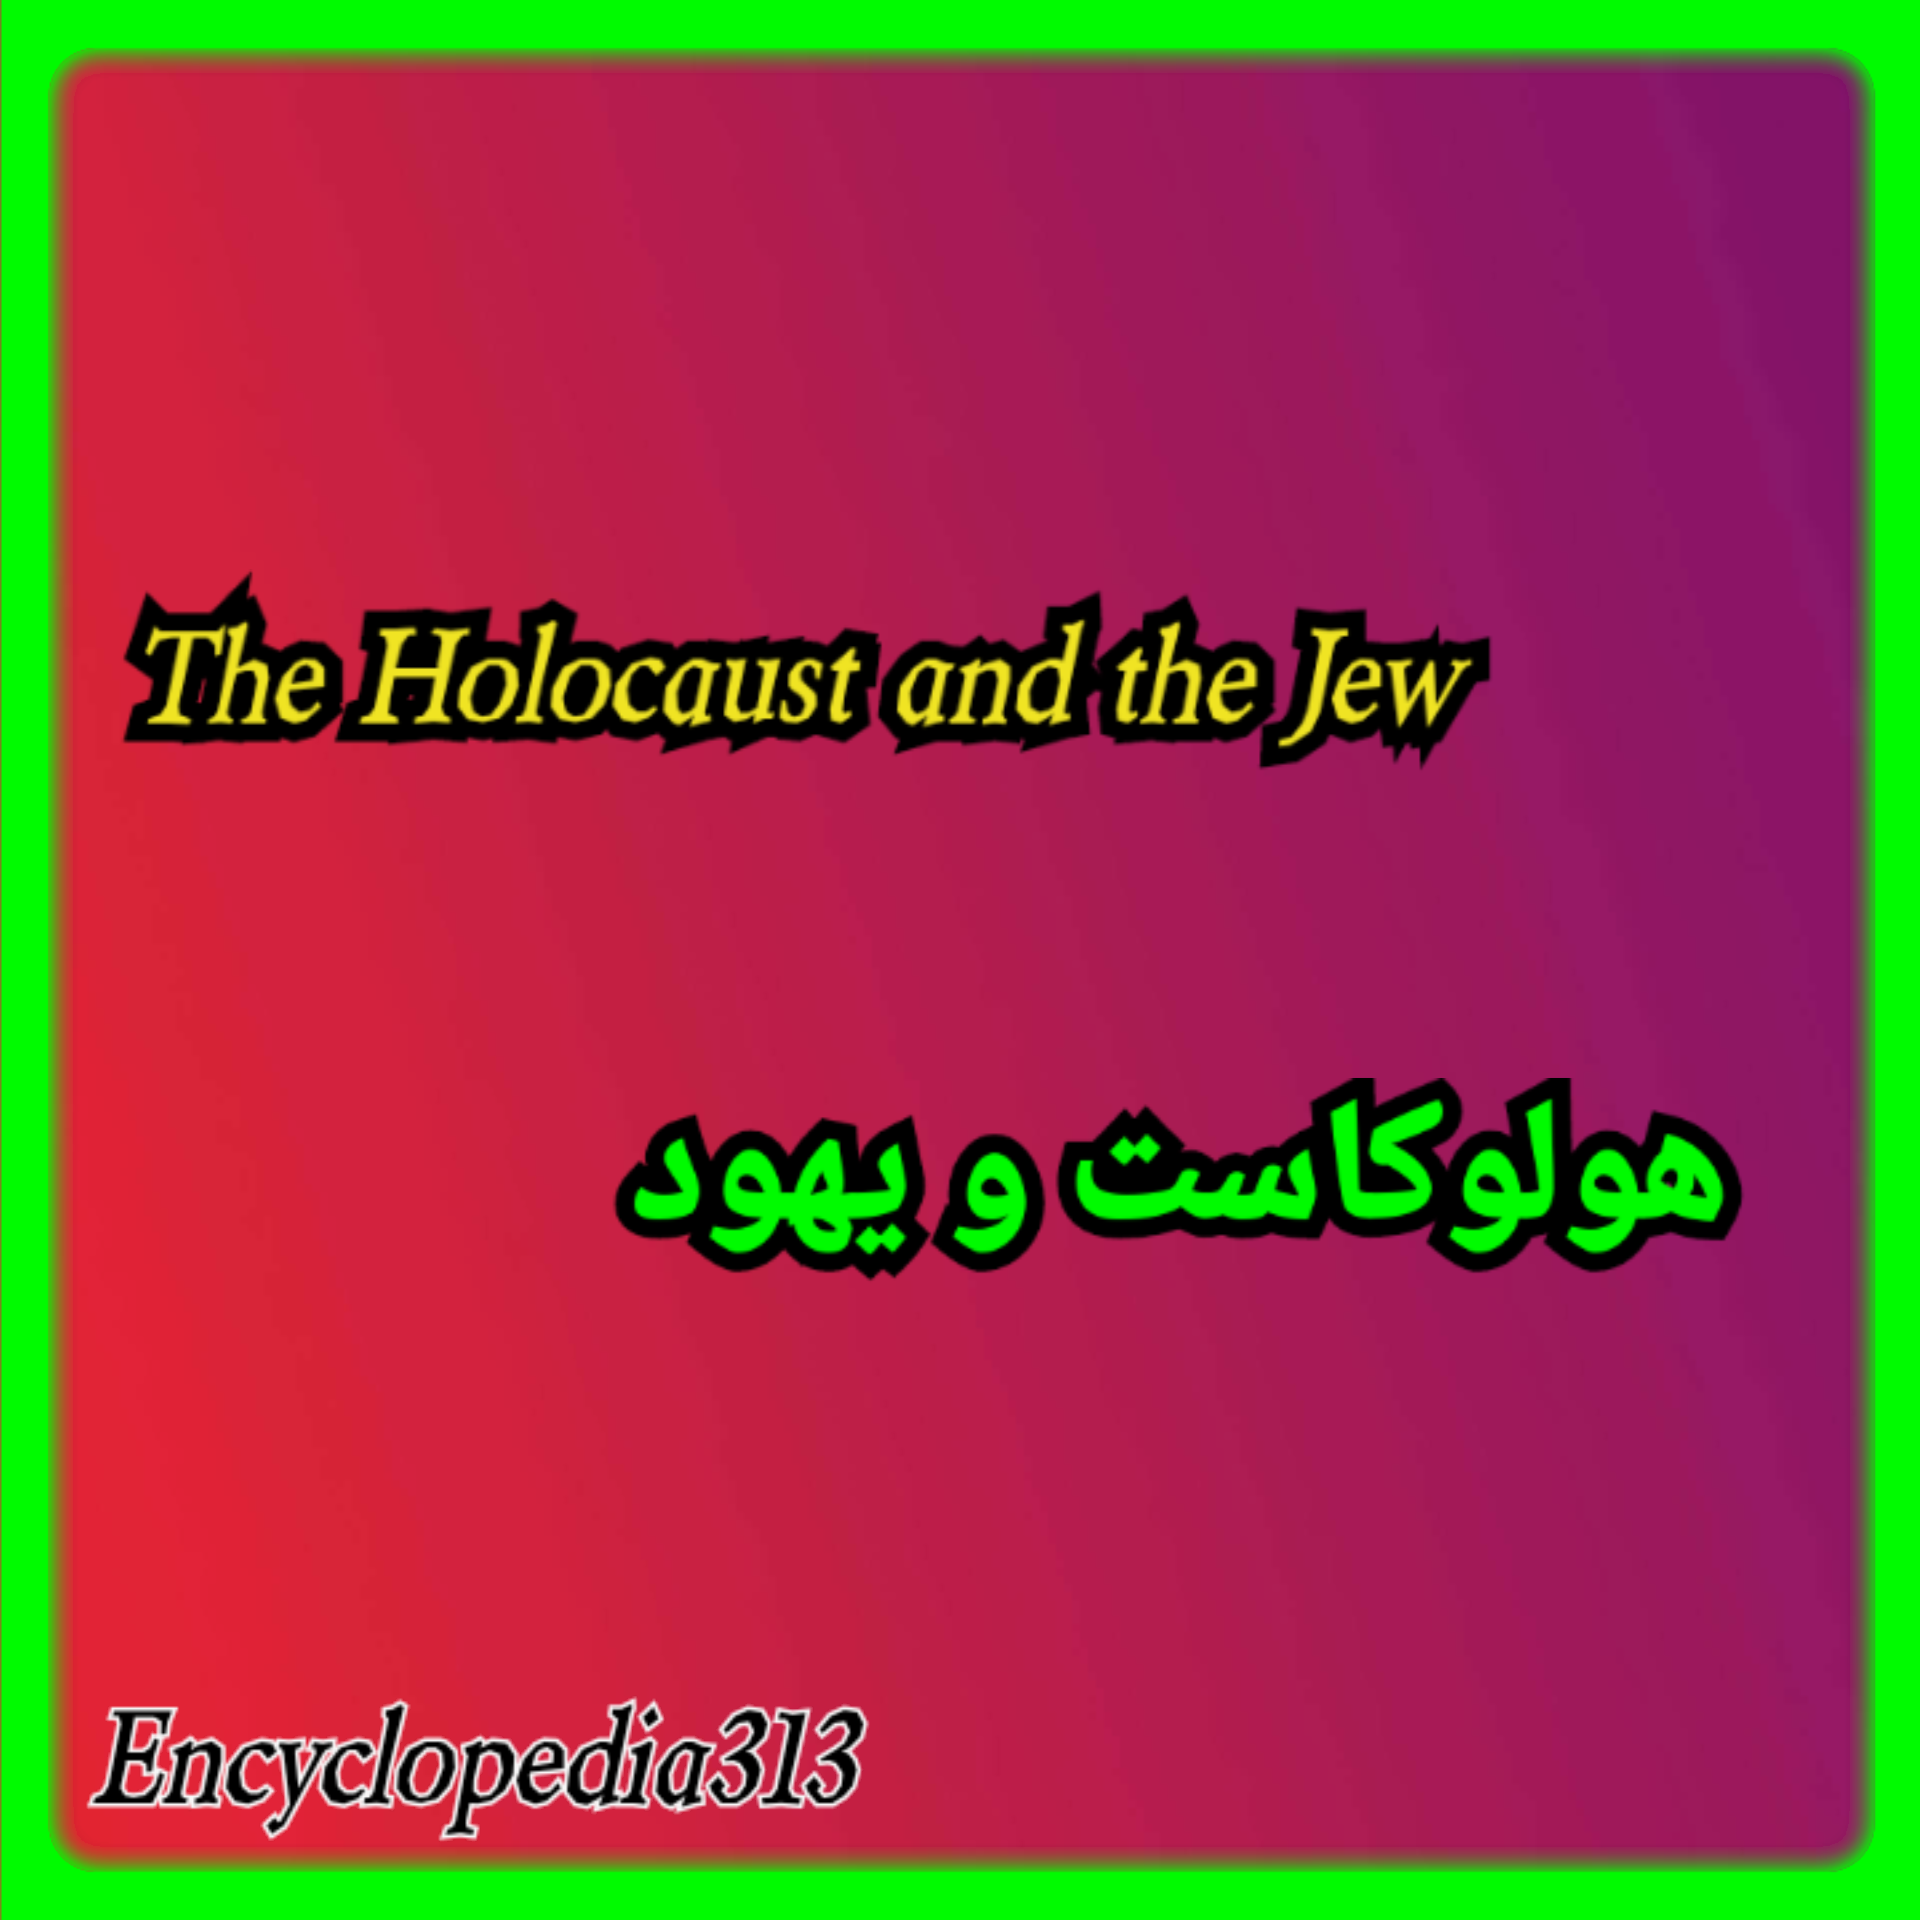 یهود و هولوکاست،The Holocaust and the Jews